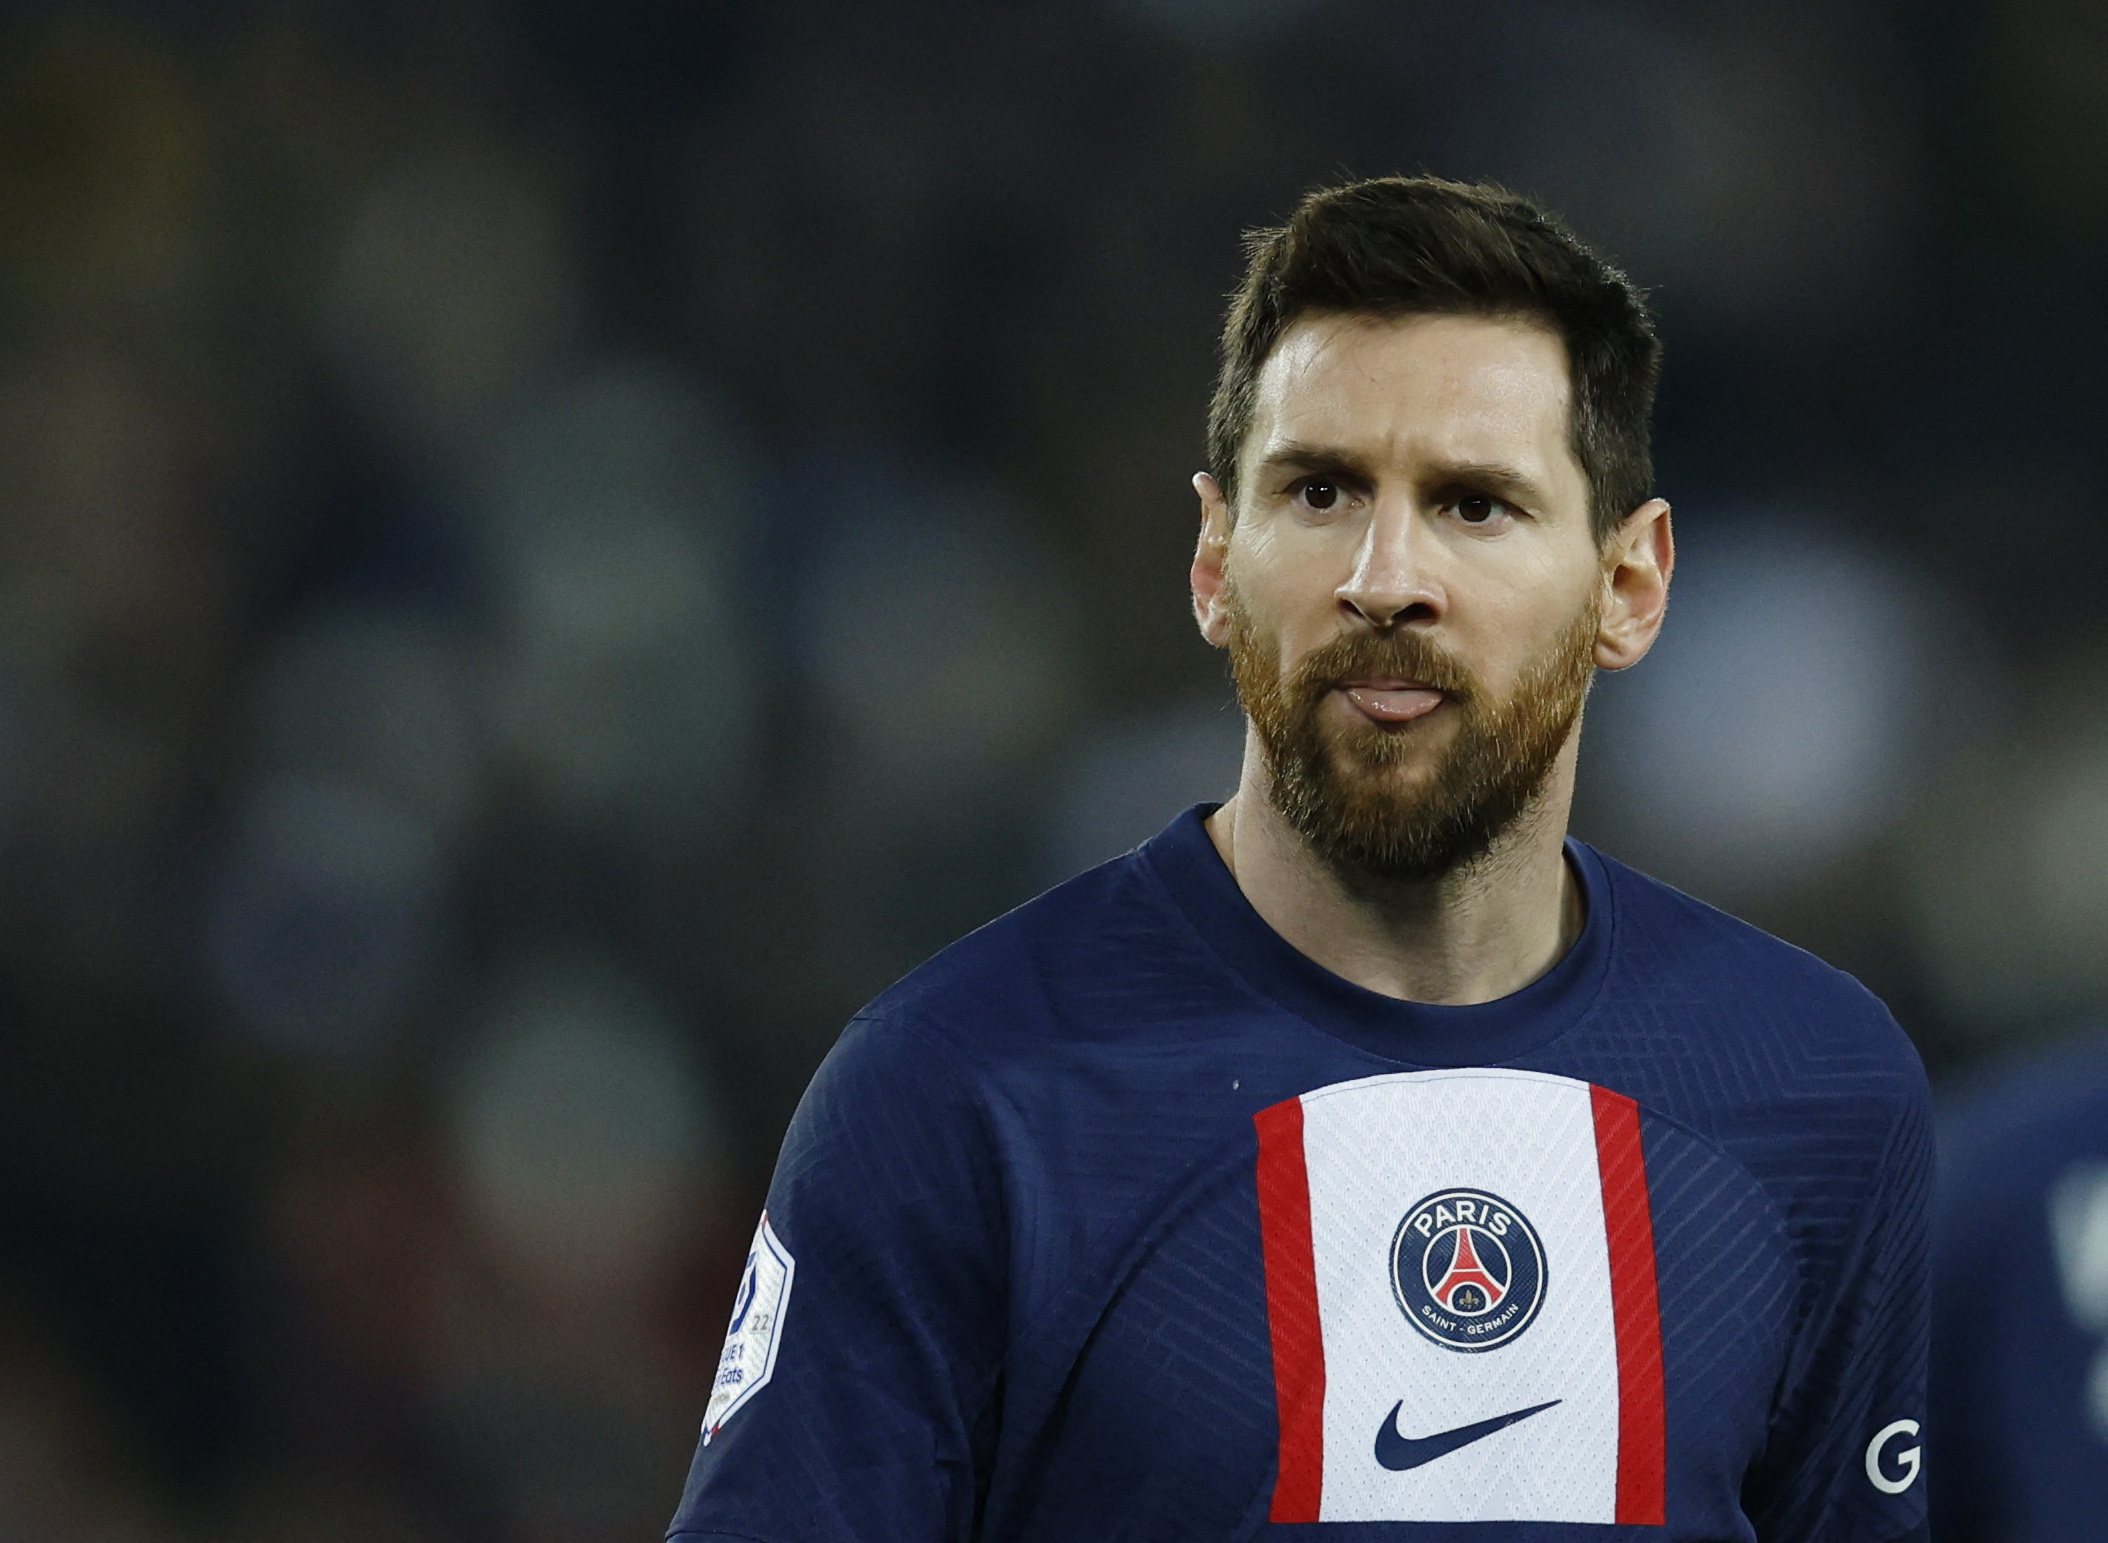 Un dirigente clave del PSG dio detalles de cómo siguen las negociaciones con Messi para renovar su contrato